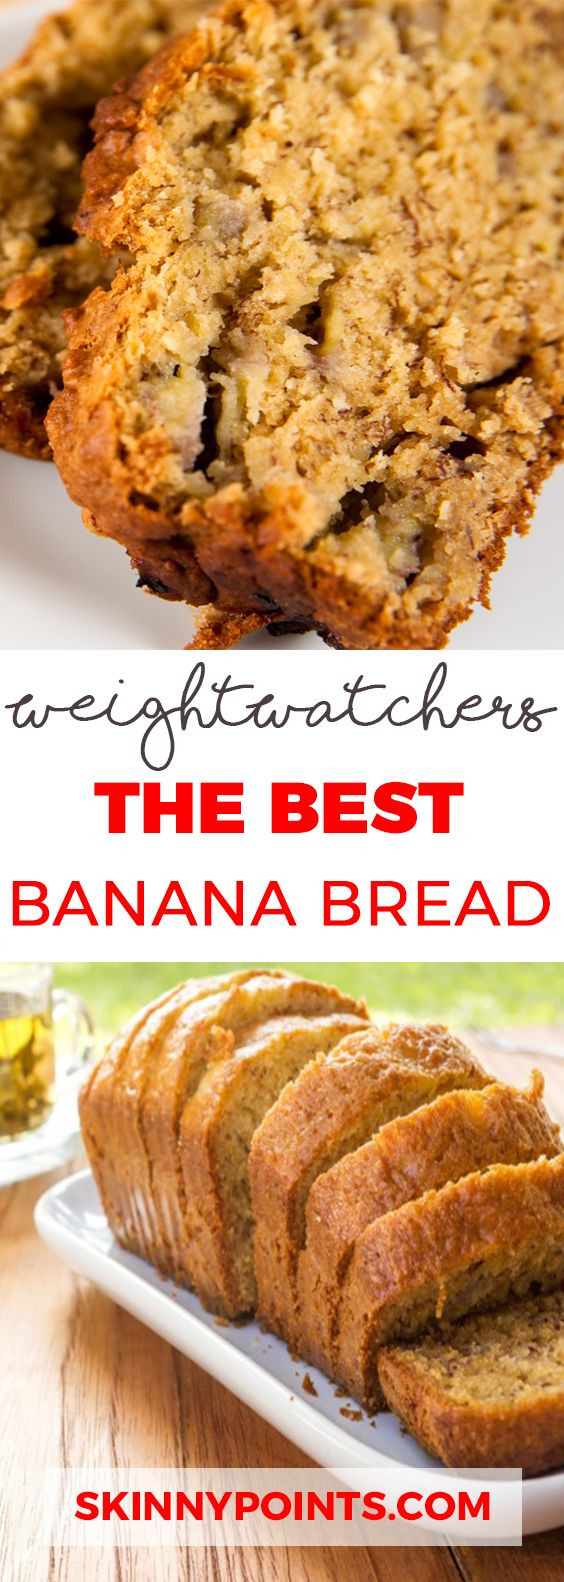 Weight Watchers Friendly Desserts
 25 Best Weight Watchers Desserts Recipes with SmartPoints